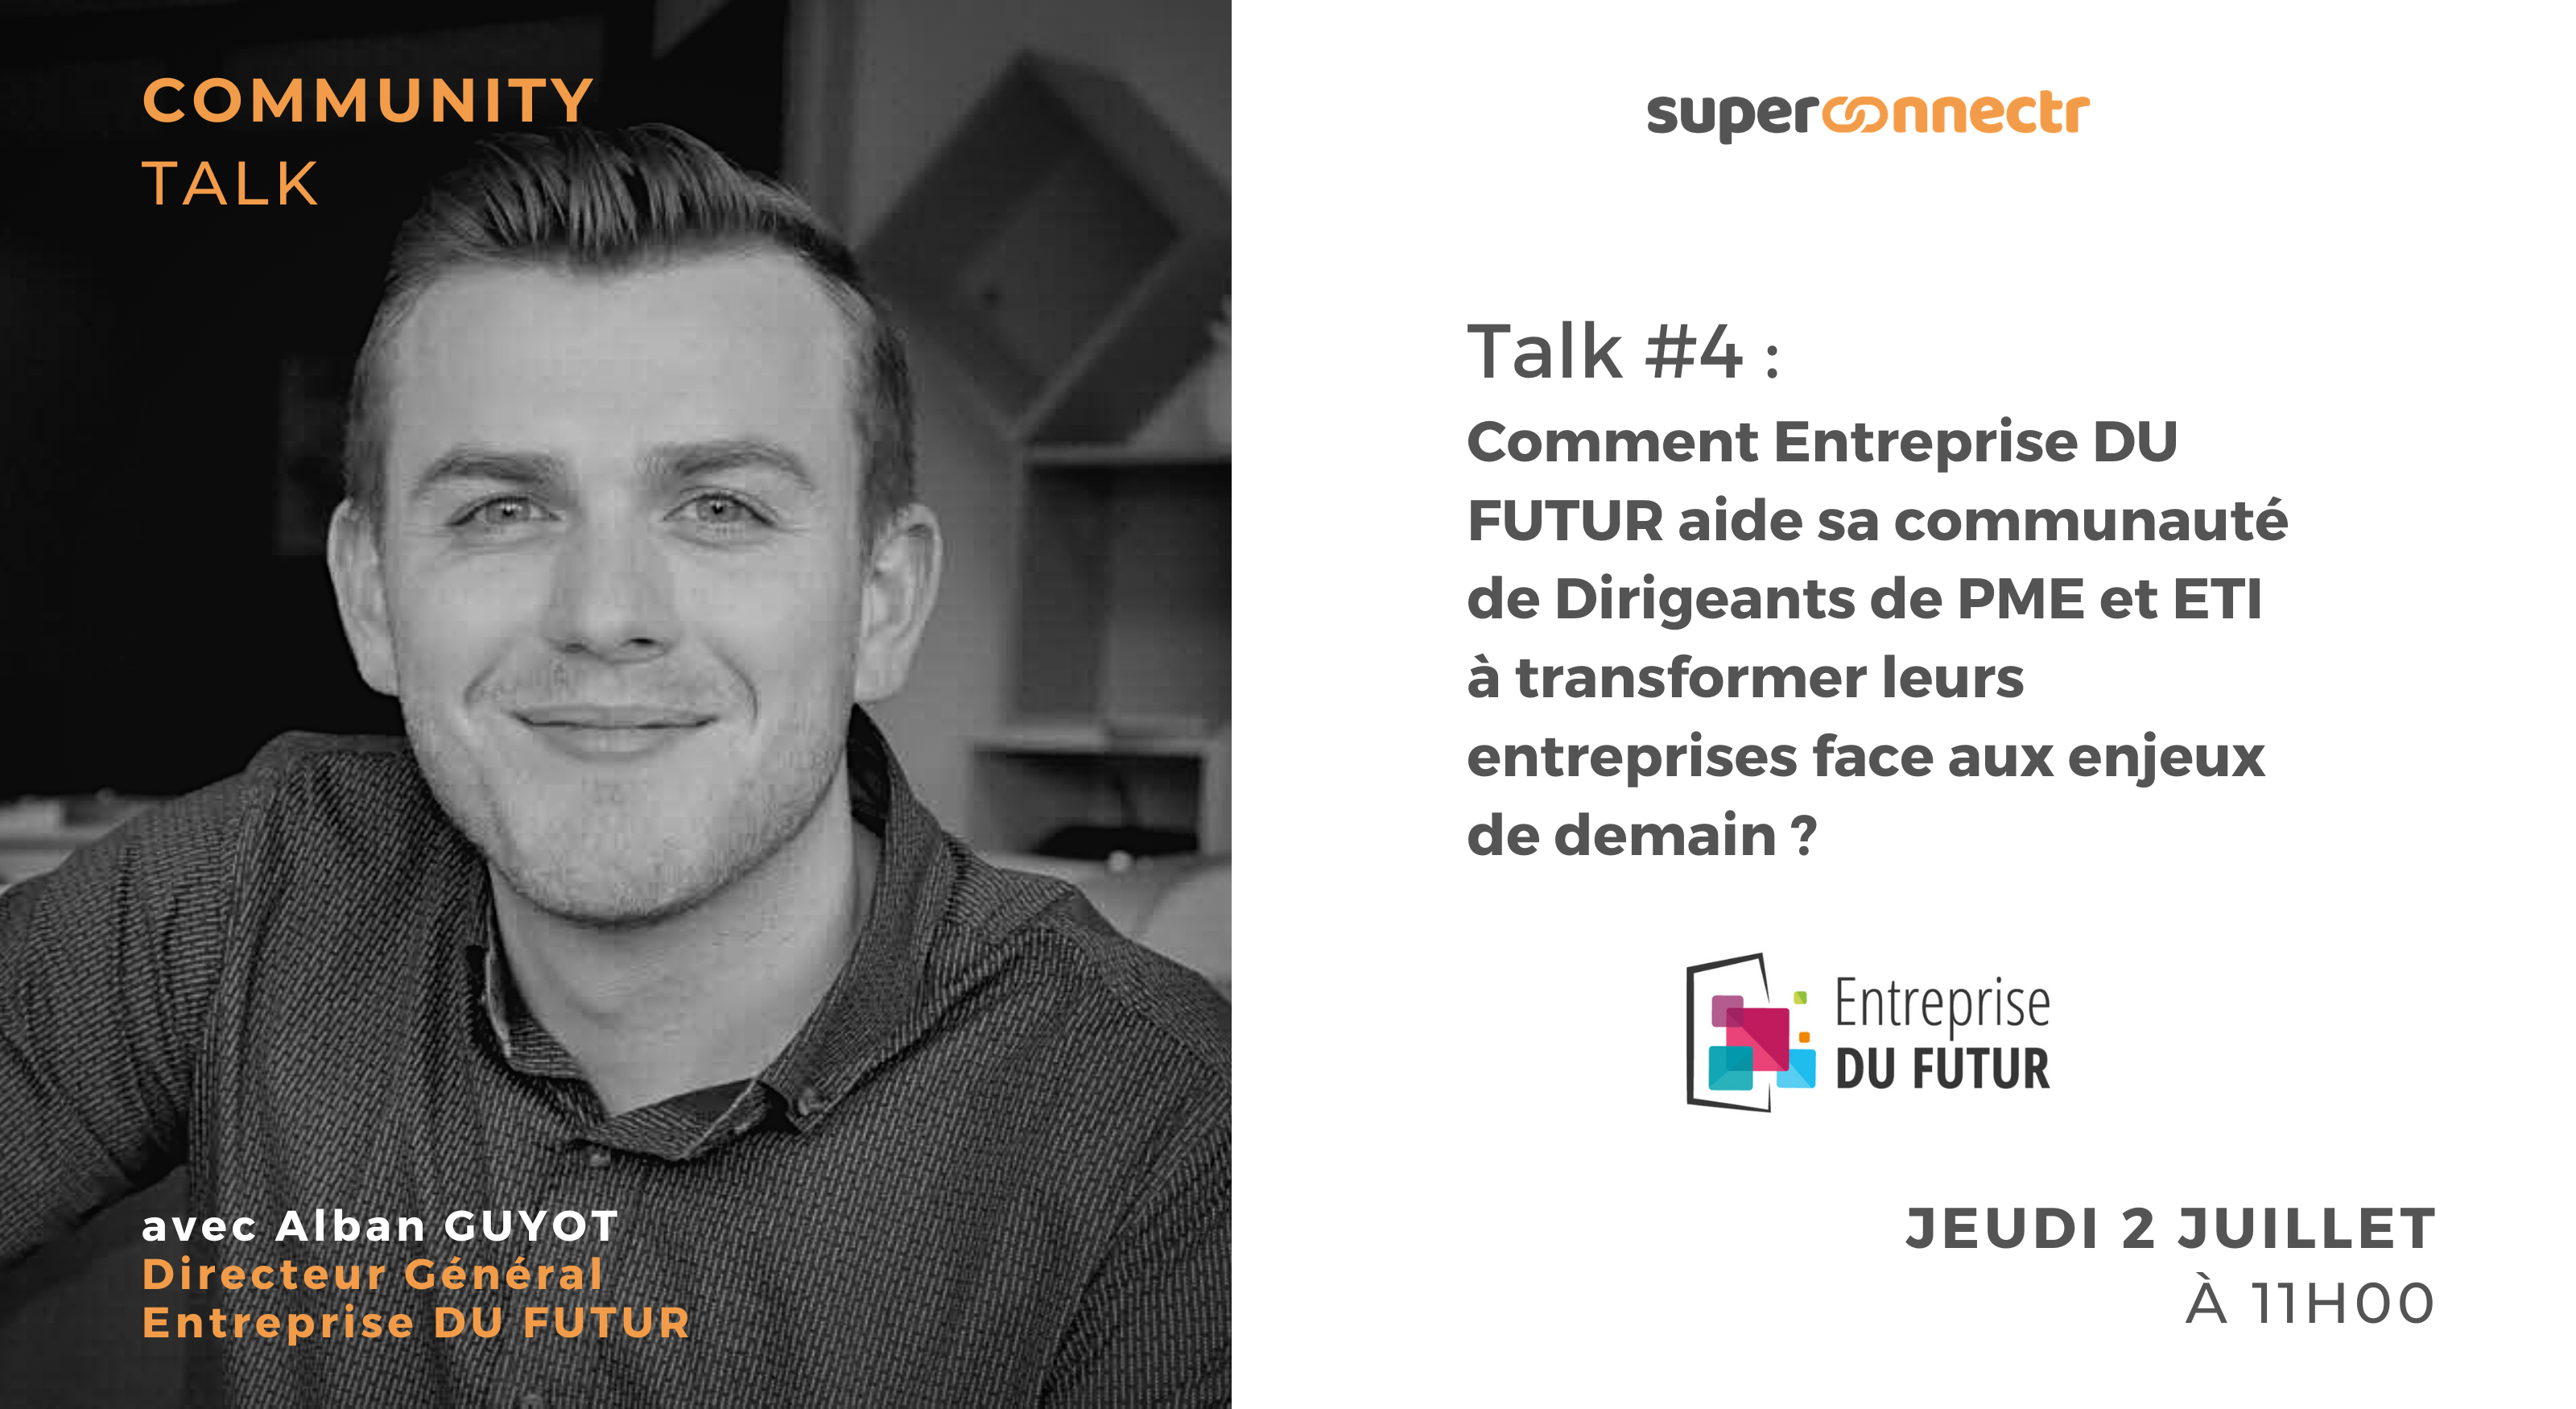 Interview : "Comment Entreprise DU FUTUR aide sa communauté de dirigeants de PME et ETI à transformer leurs entreprises face aux enjeux de demain ?"